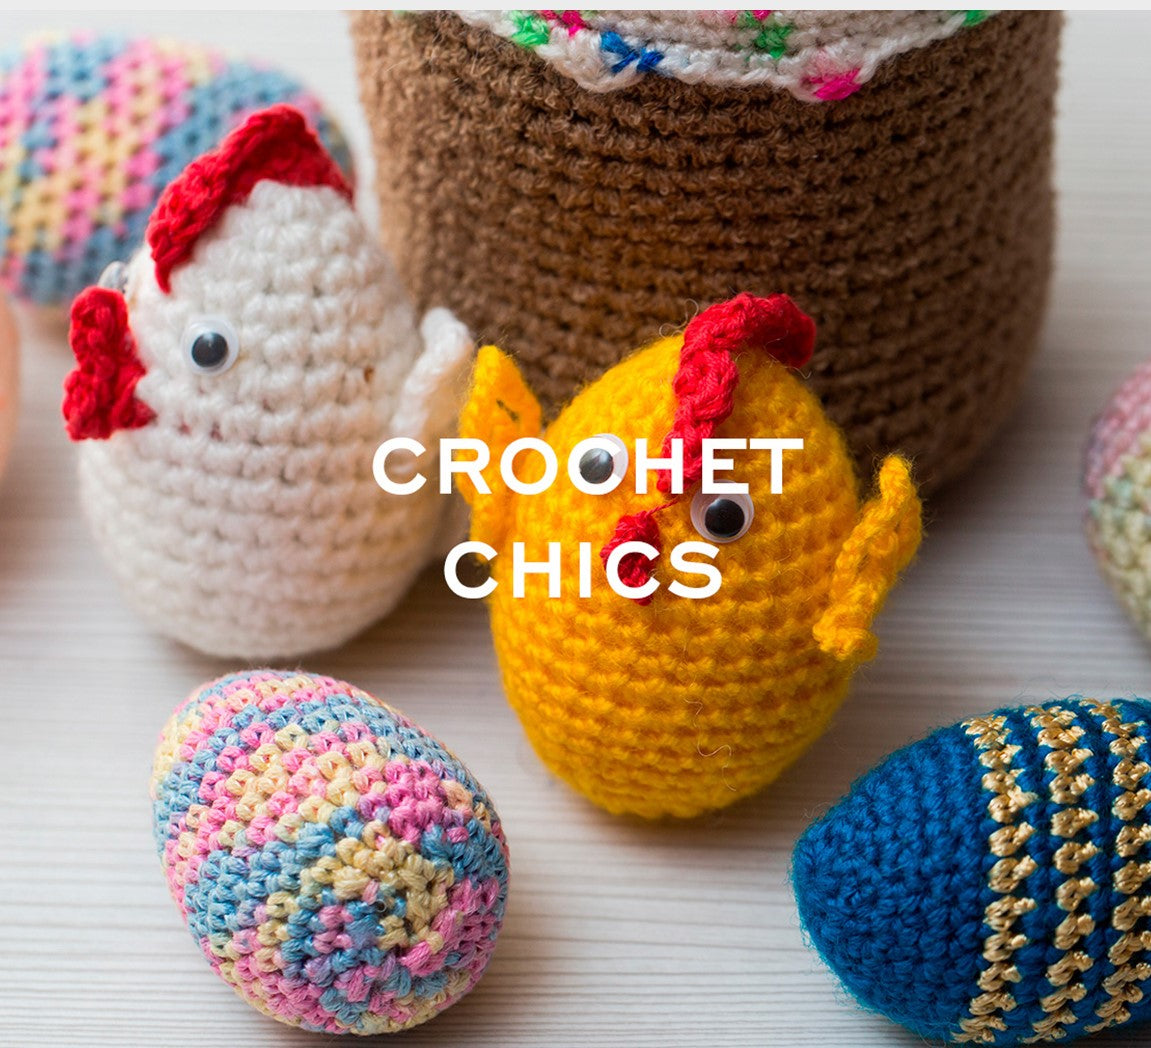 Crochet chics